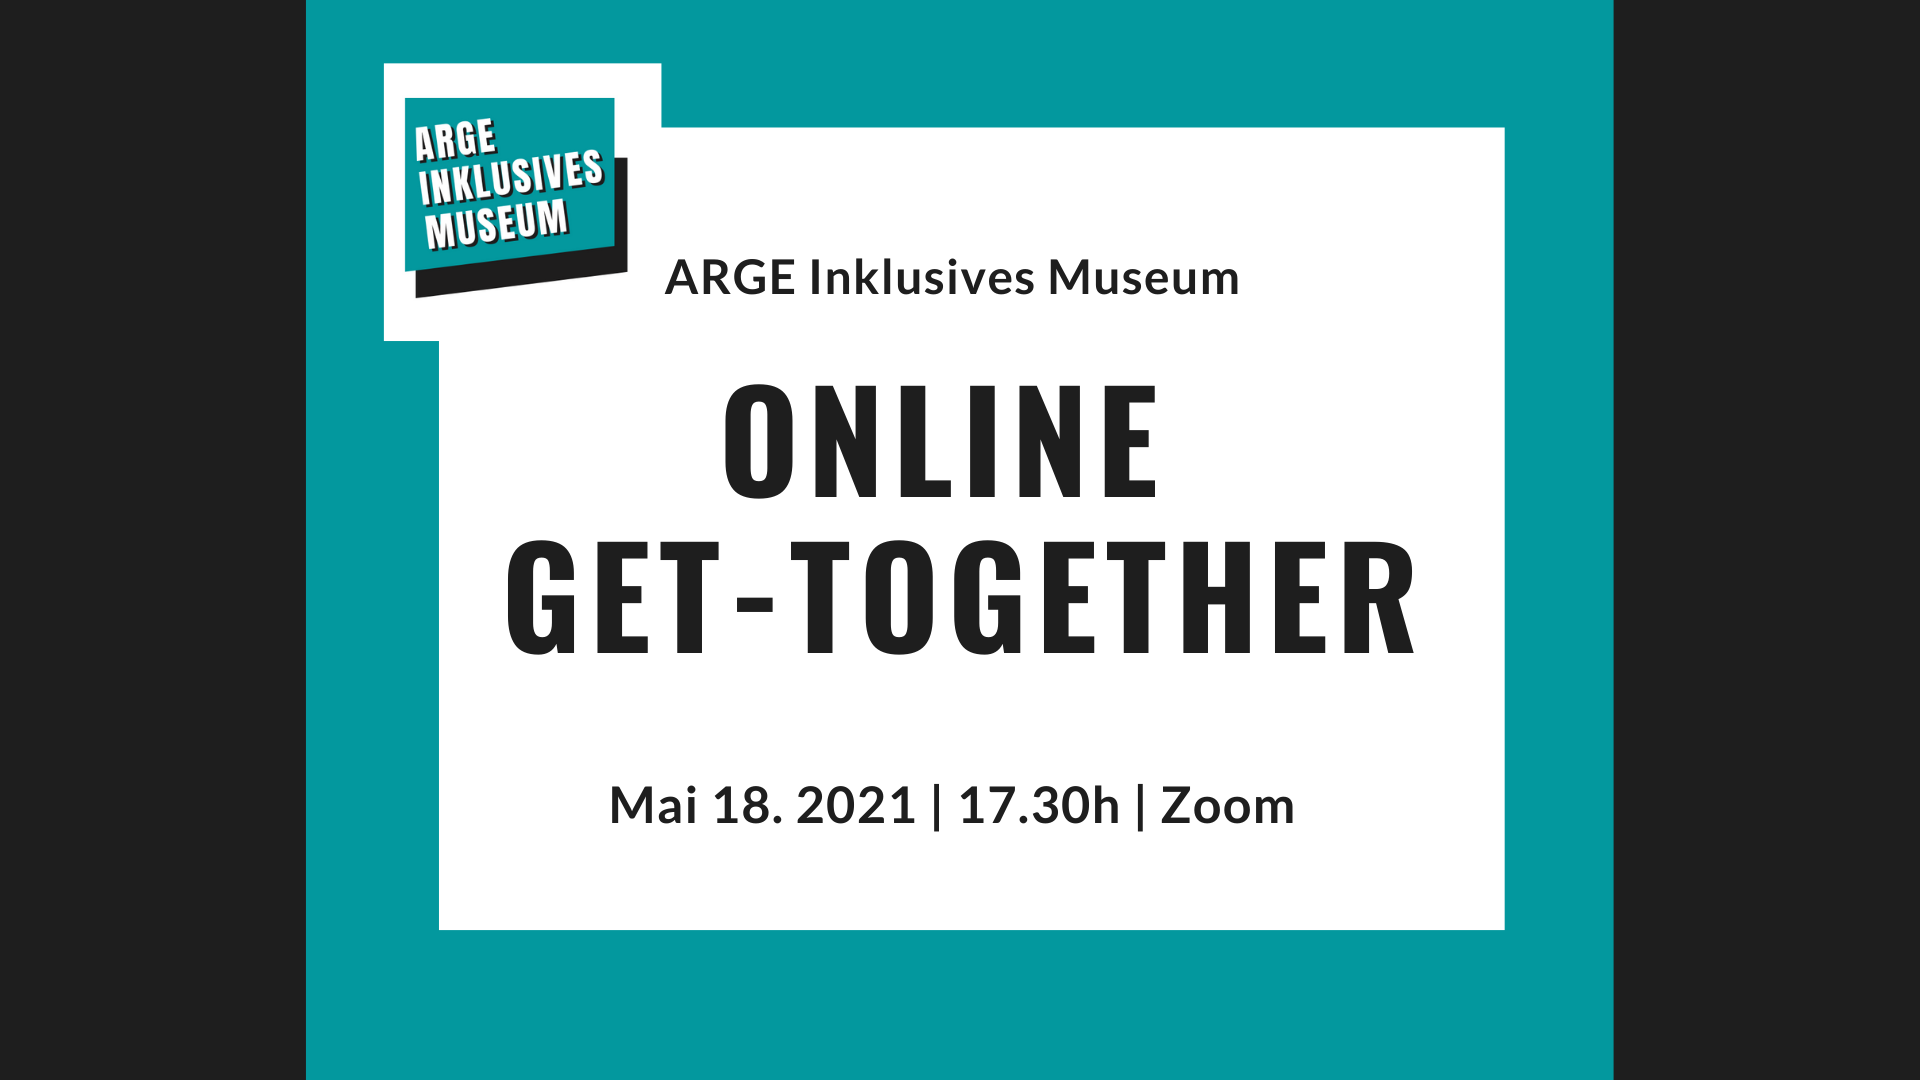 Grafik mit dem Text: ARGE Inklusives Museum. Online Get-Together, 18. Mai 2021, Zoom